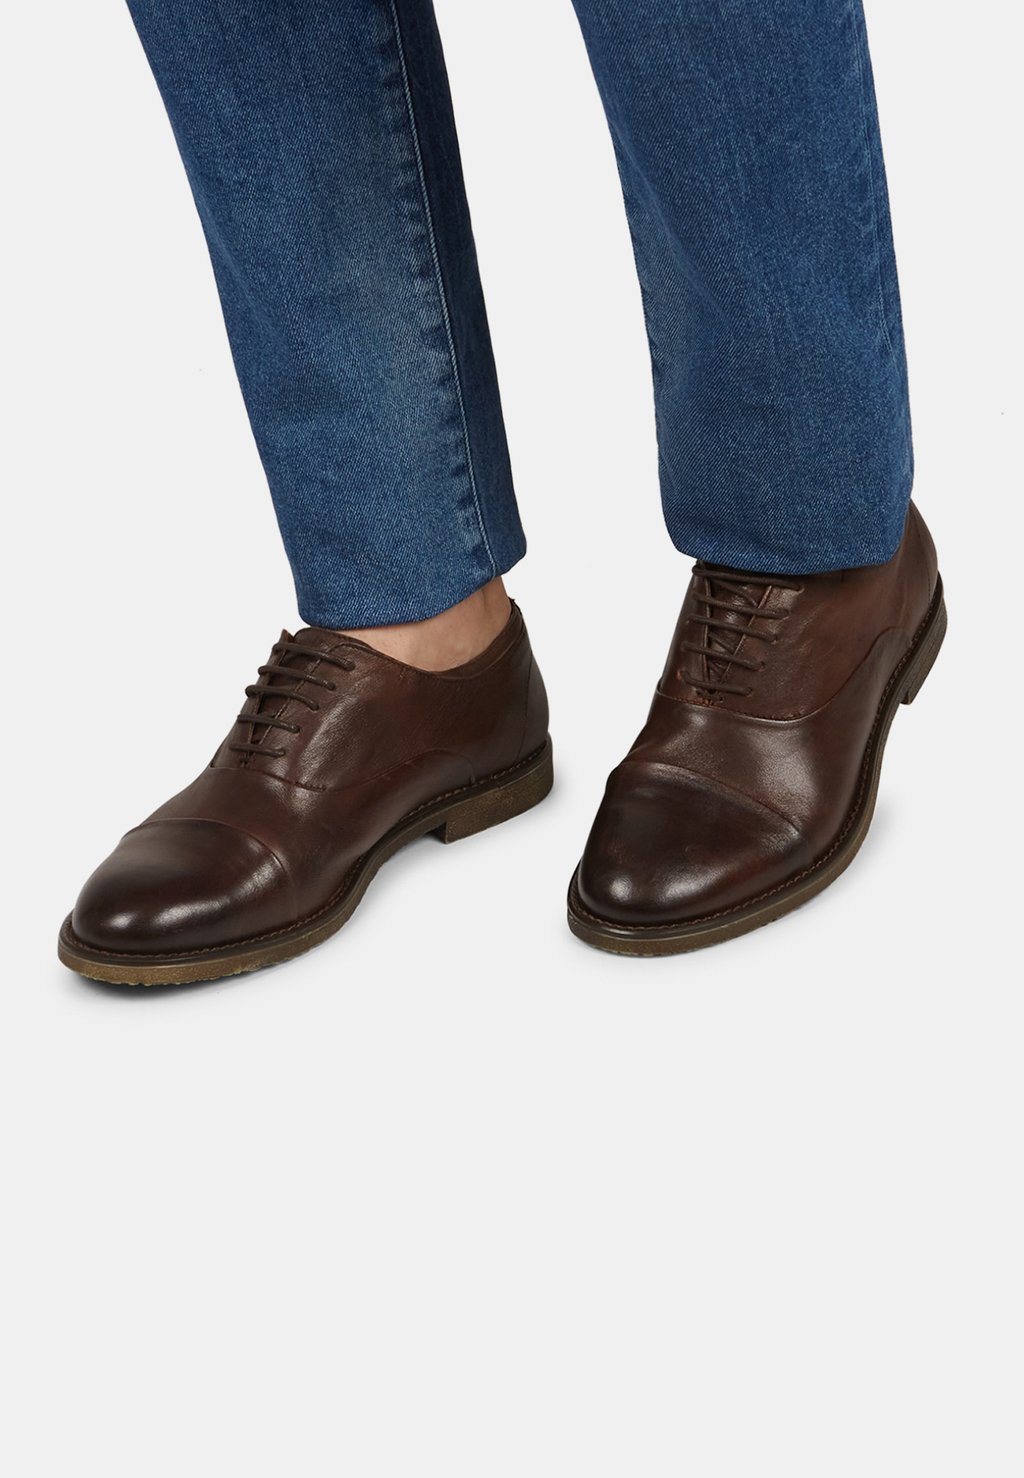 Деловые туфли на шнуровке Bata, цвет marrone